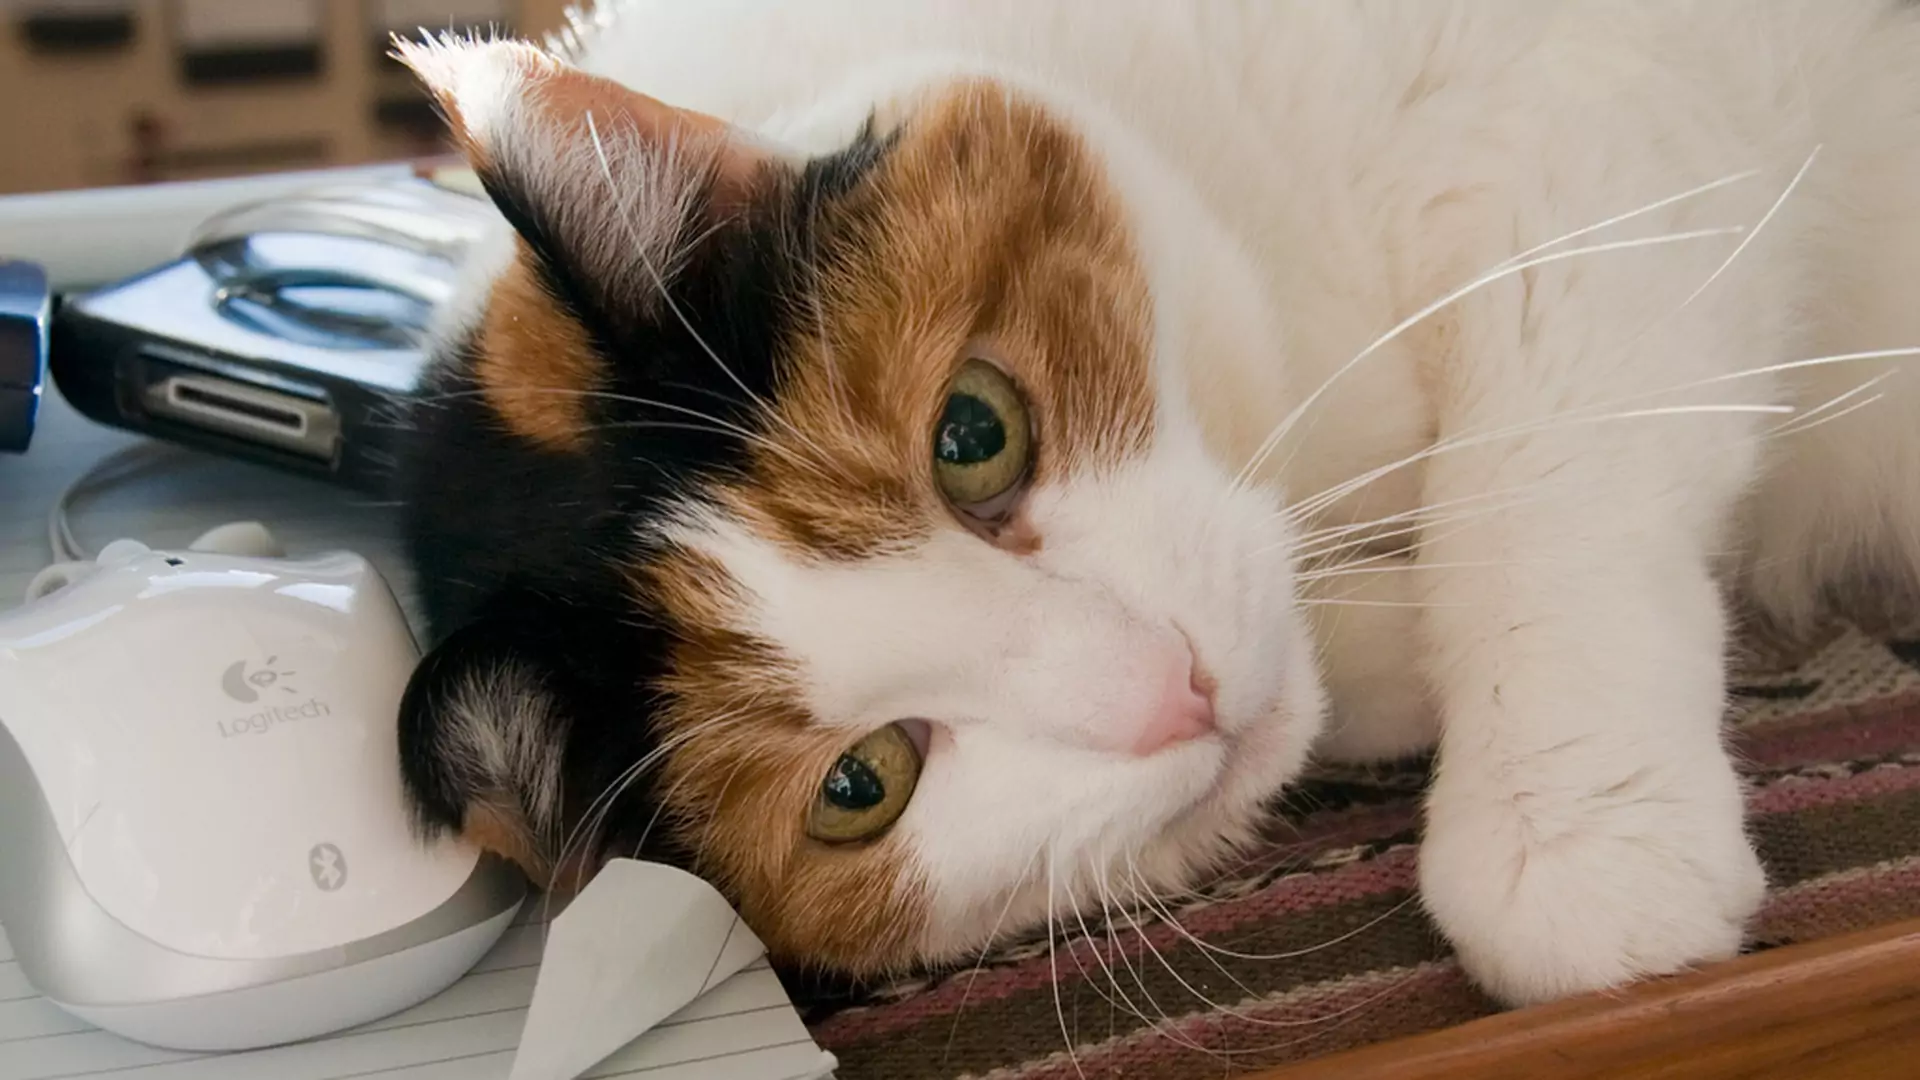 Dlaczego koty miauczą tylko do swoich właścicieli? Wyjaśniamy koci język